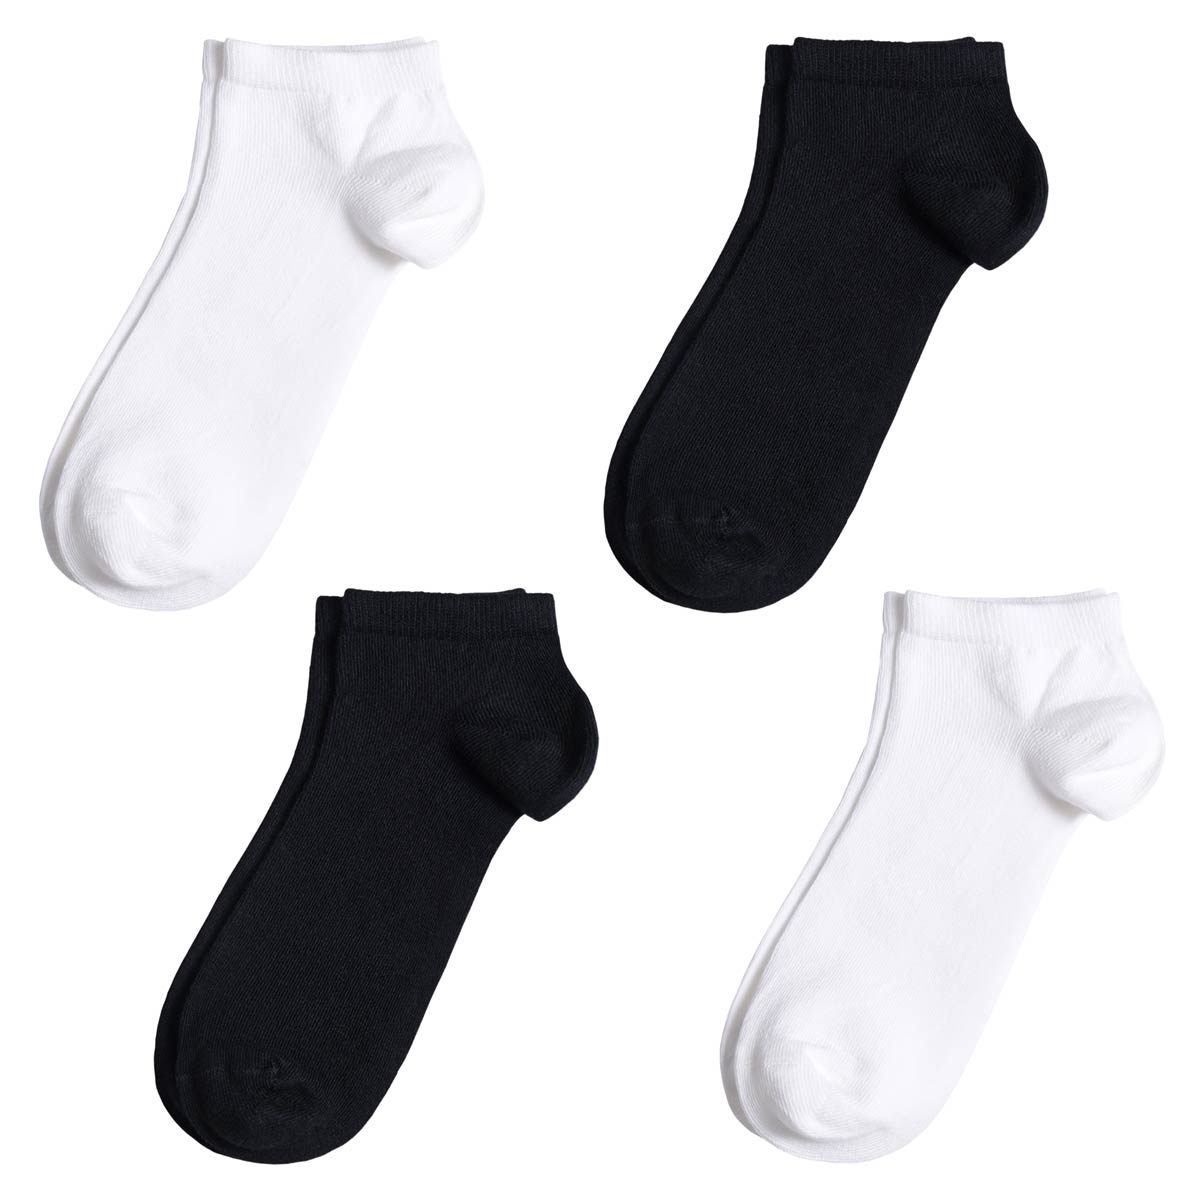 Socquettes homme - Assortiment 4 paires Noir/Blanc